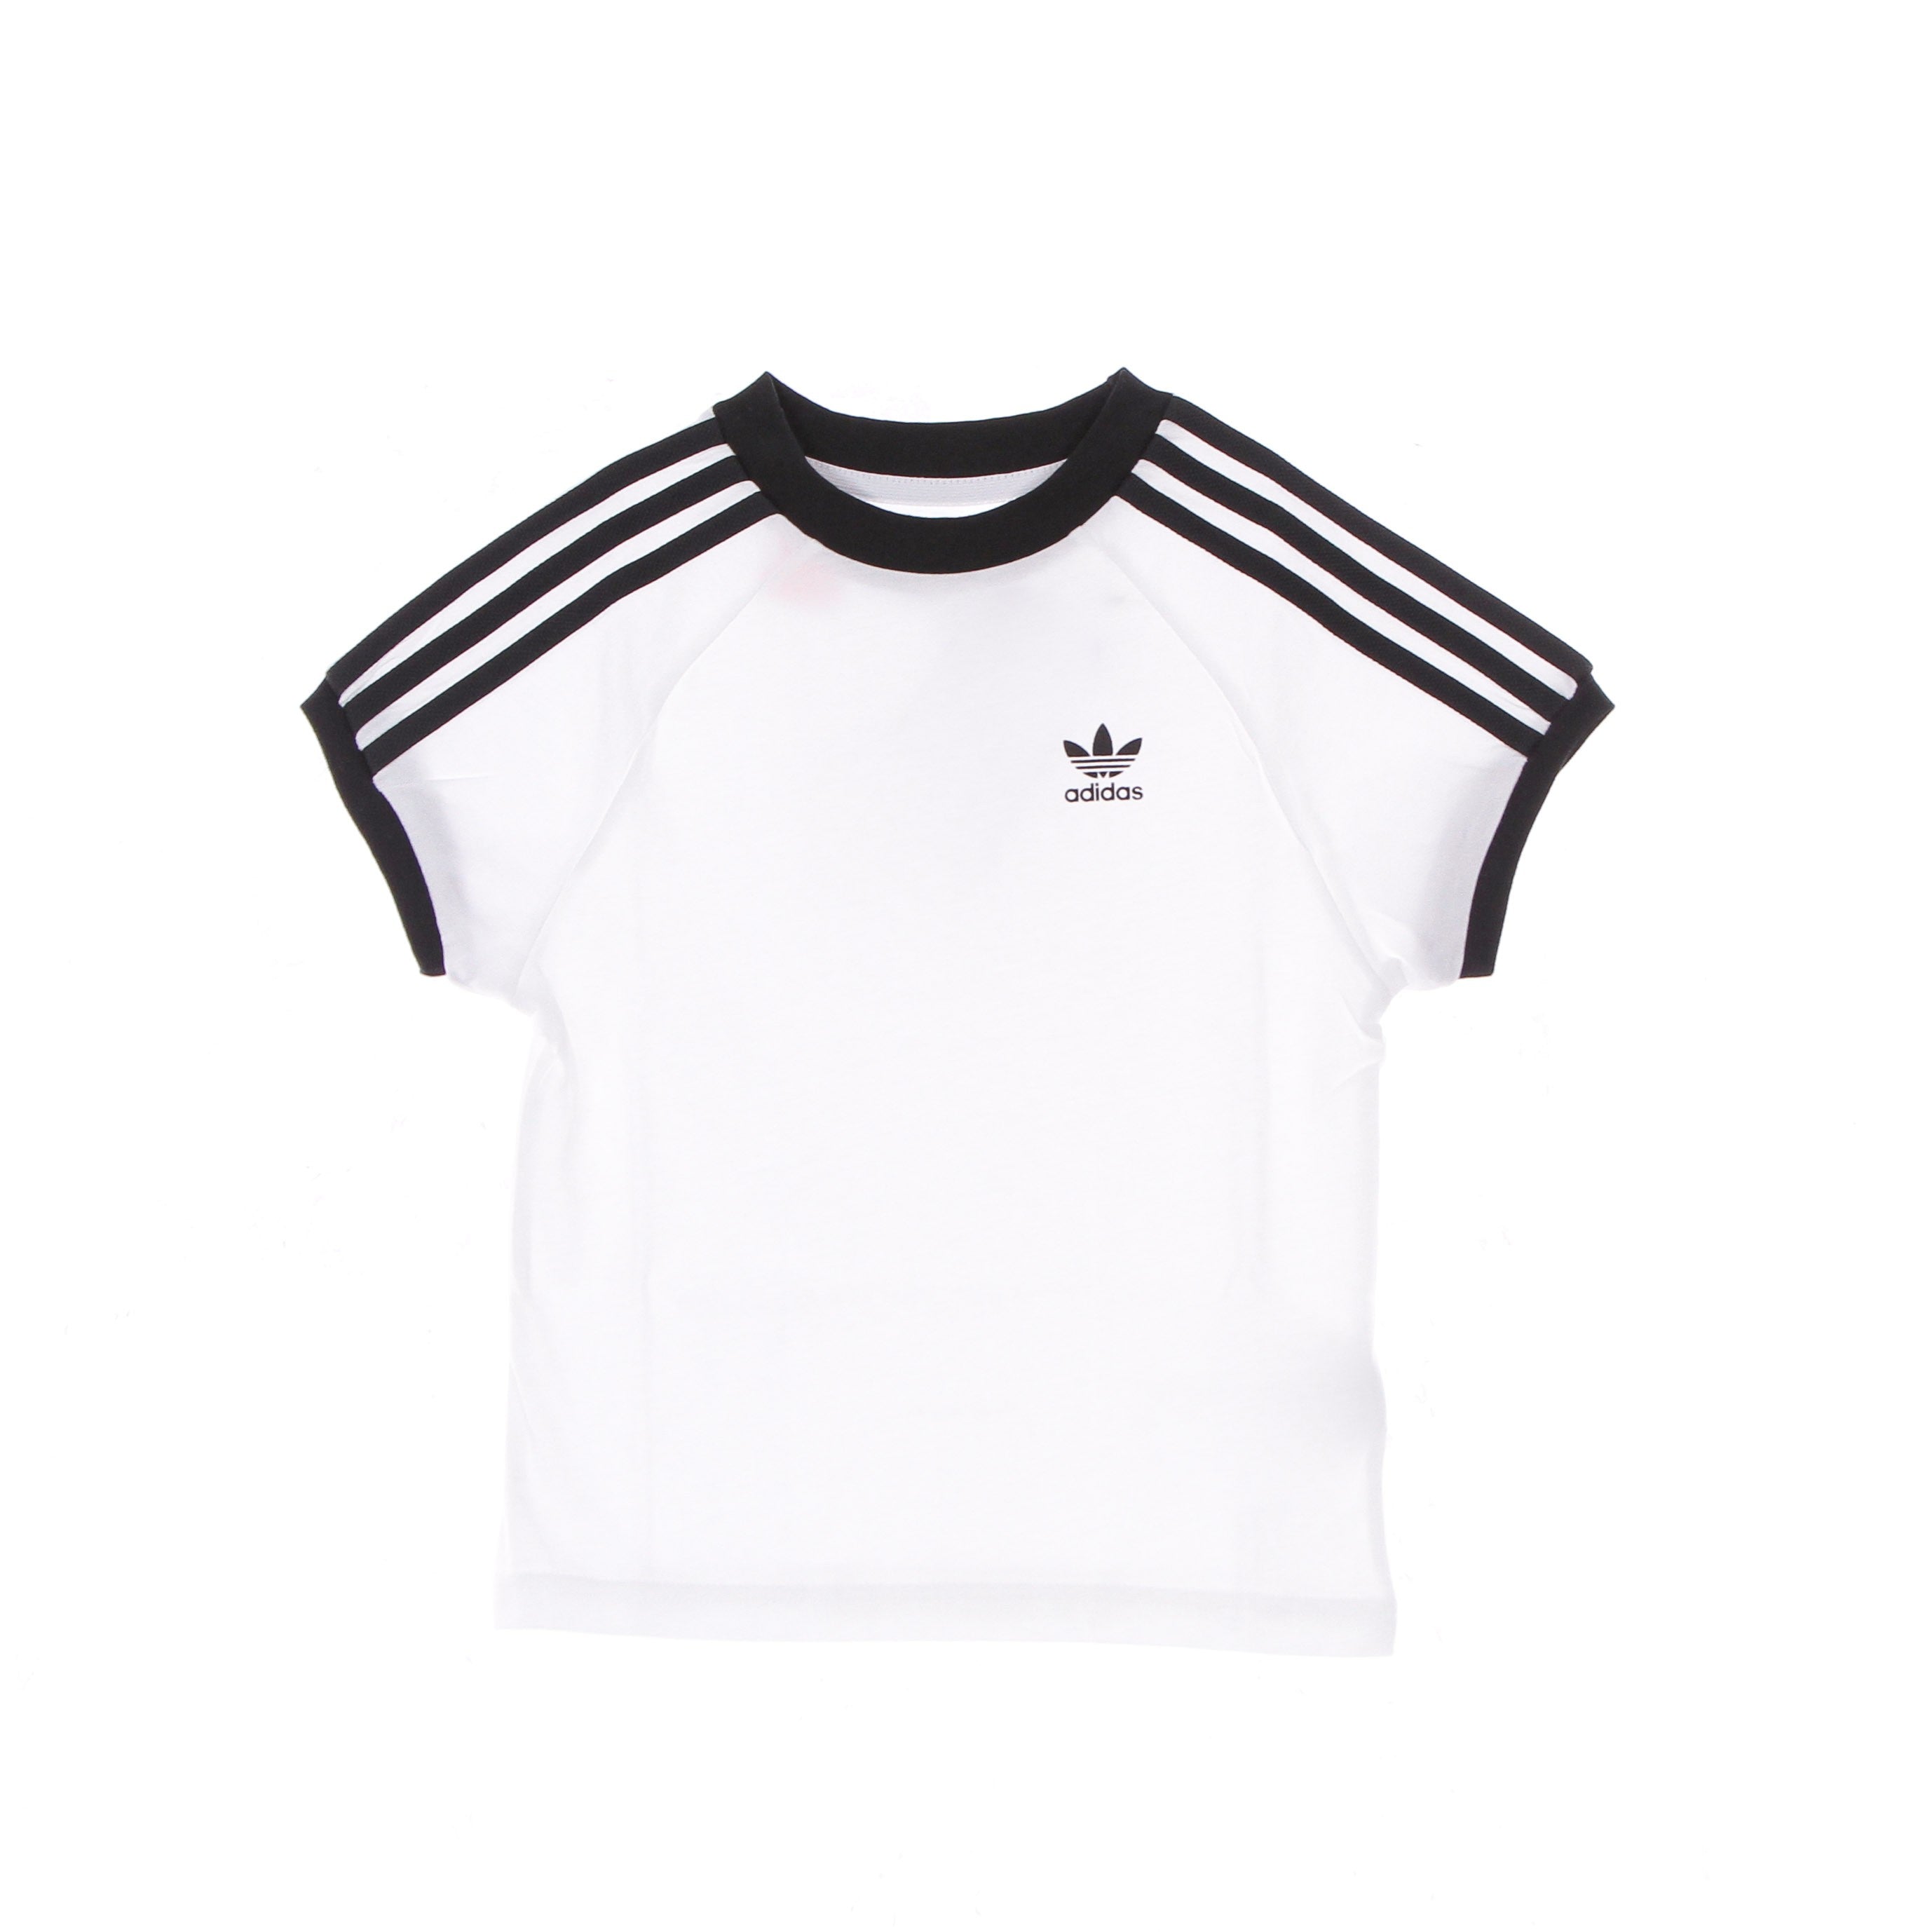 Adidas, Maglietta Bambino 3 Stripes Adicolor Tee, White/black